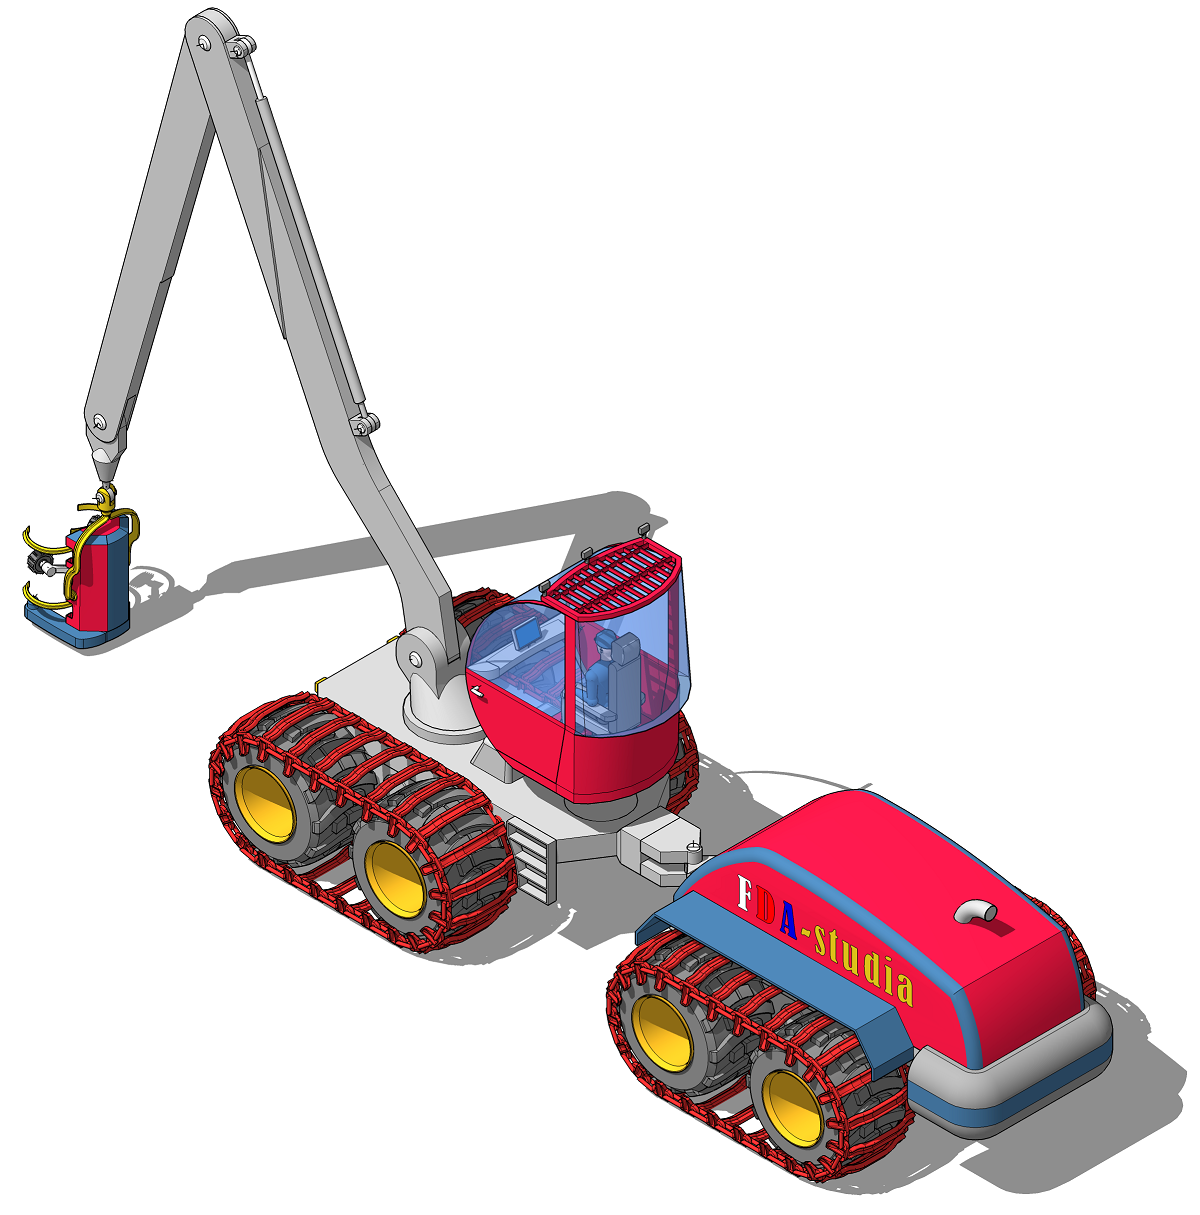 3D модель лесозаготовительной машины (комбайна) на гусеницах